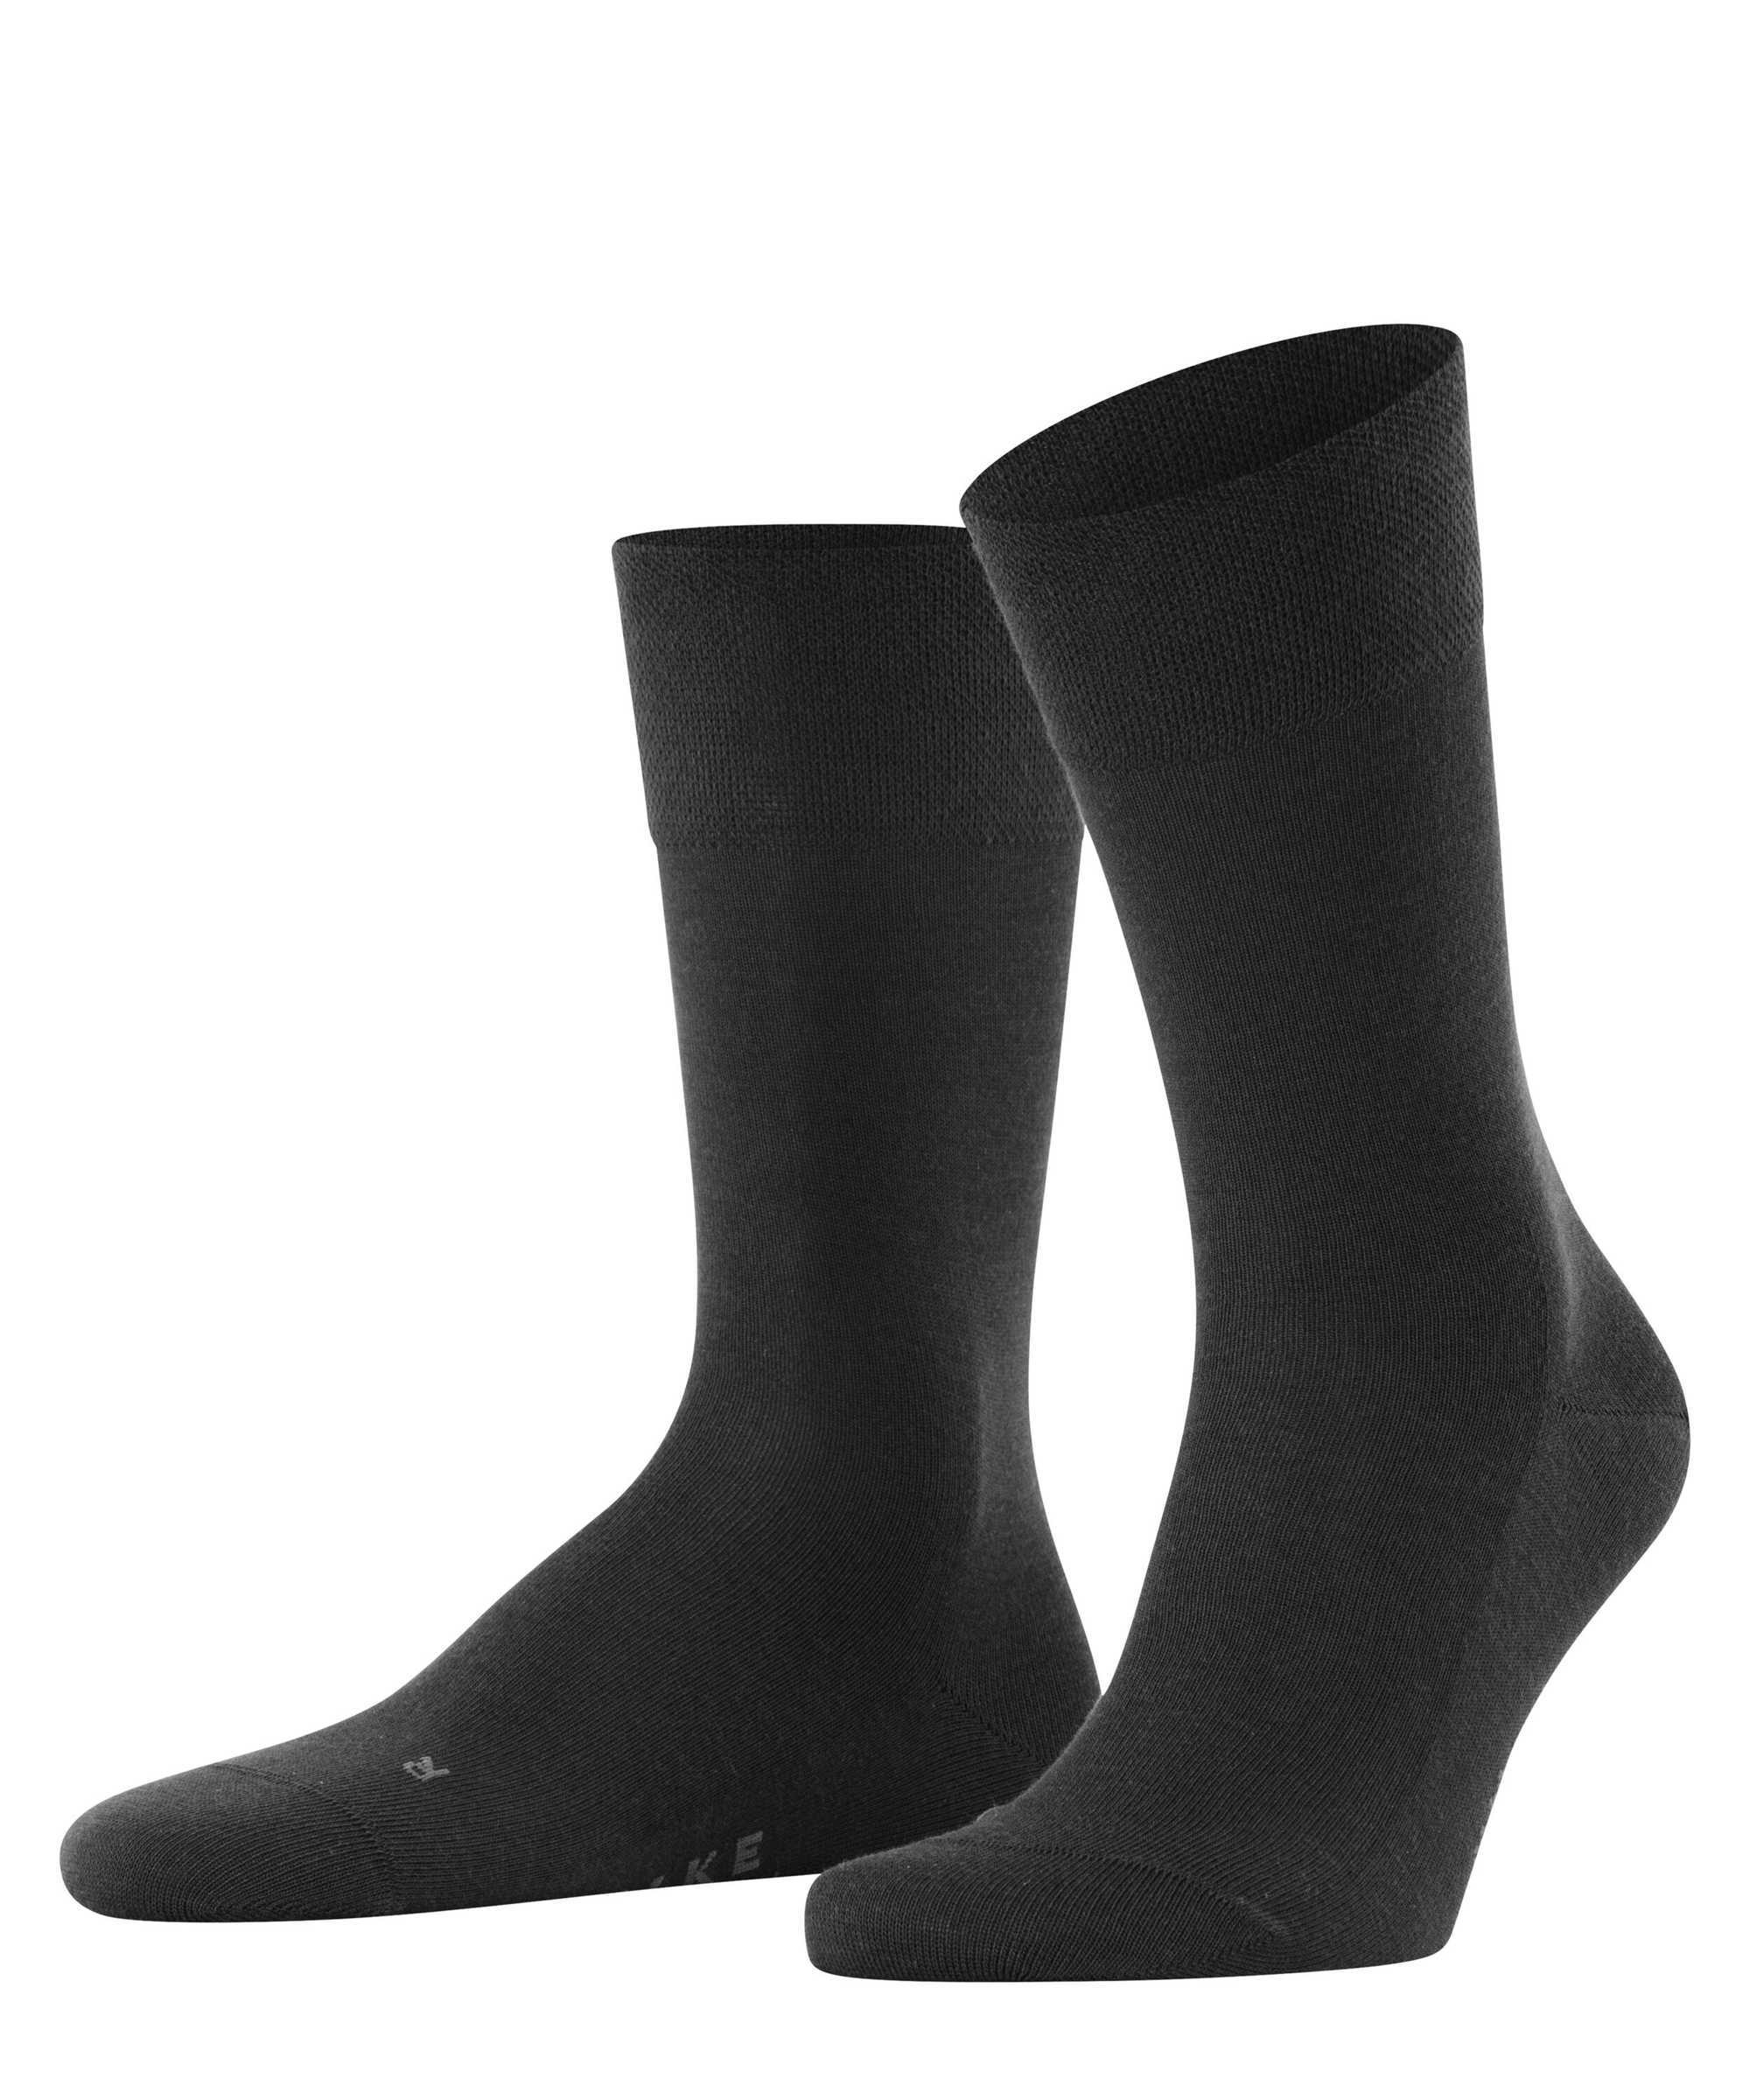 Falke Herren Socken Hersteller: Falke Bestellnummer:4031309875576